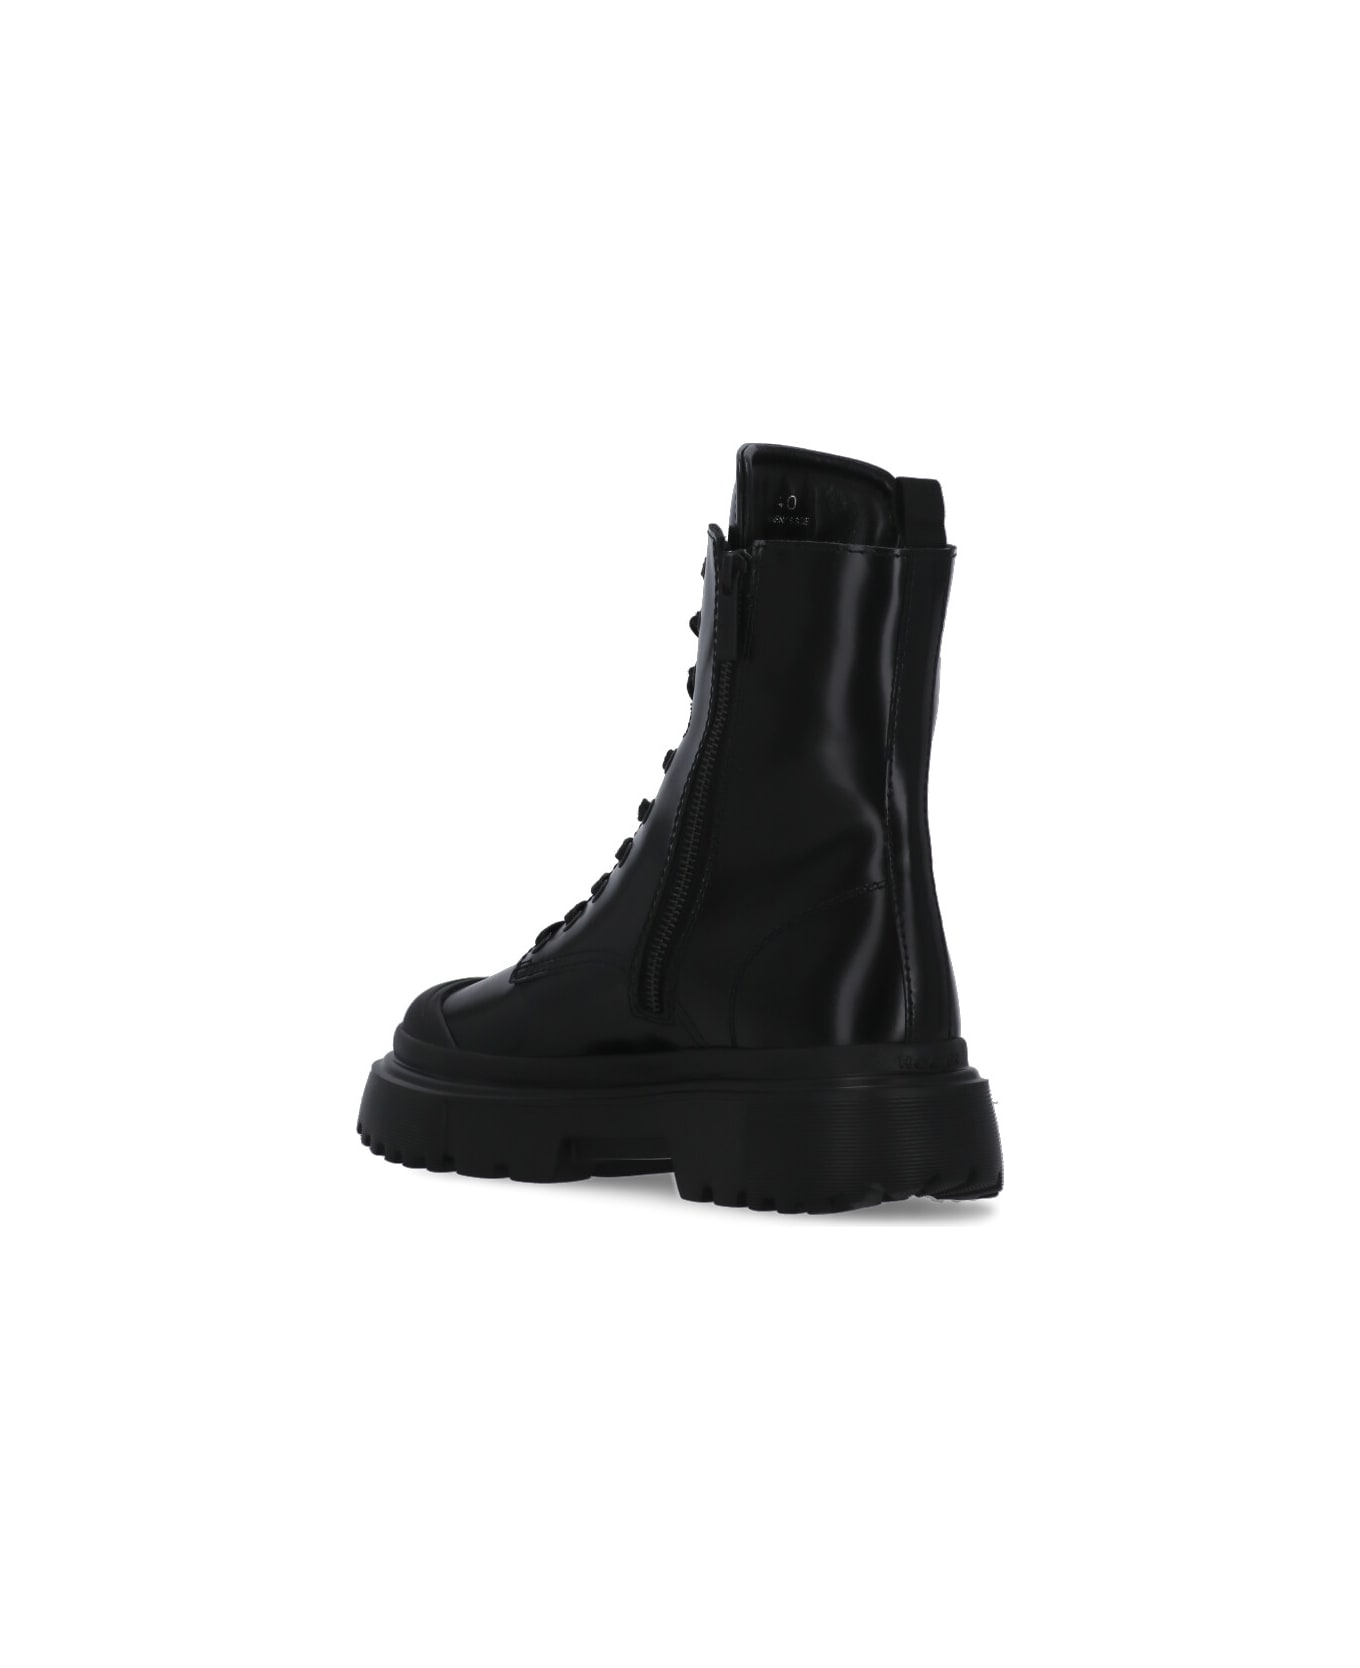 Hogan H619 Combat Boots - Black